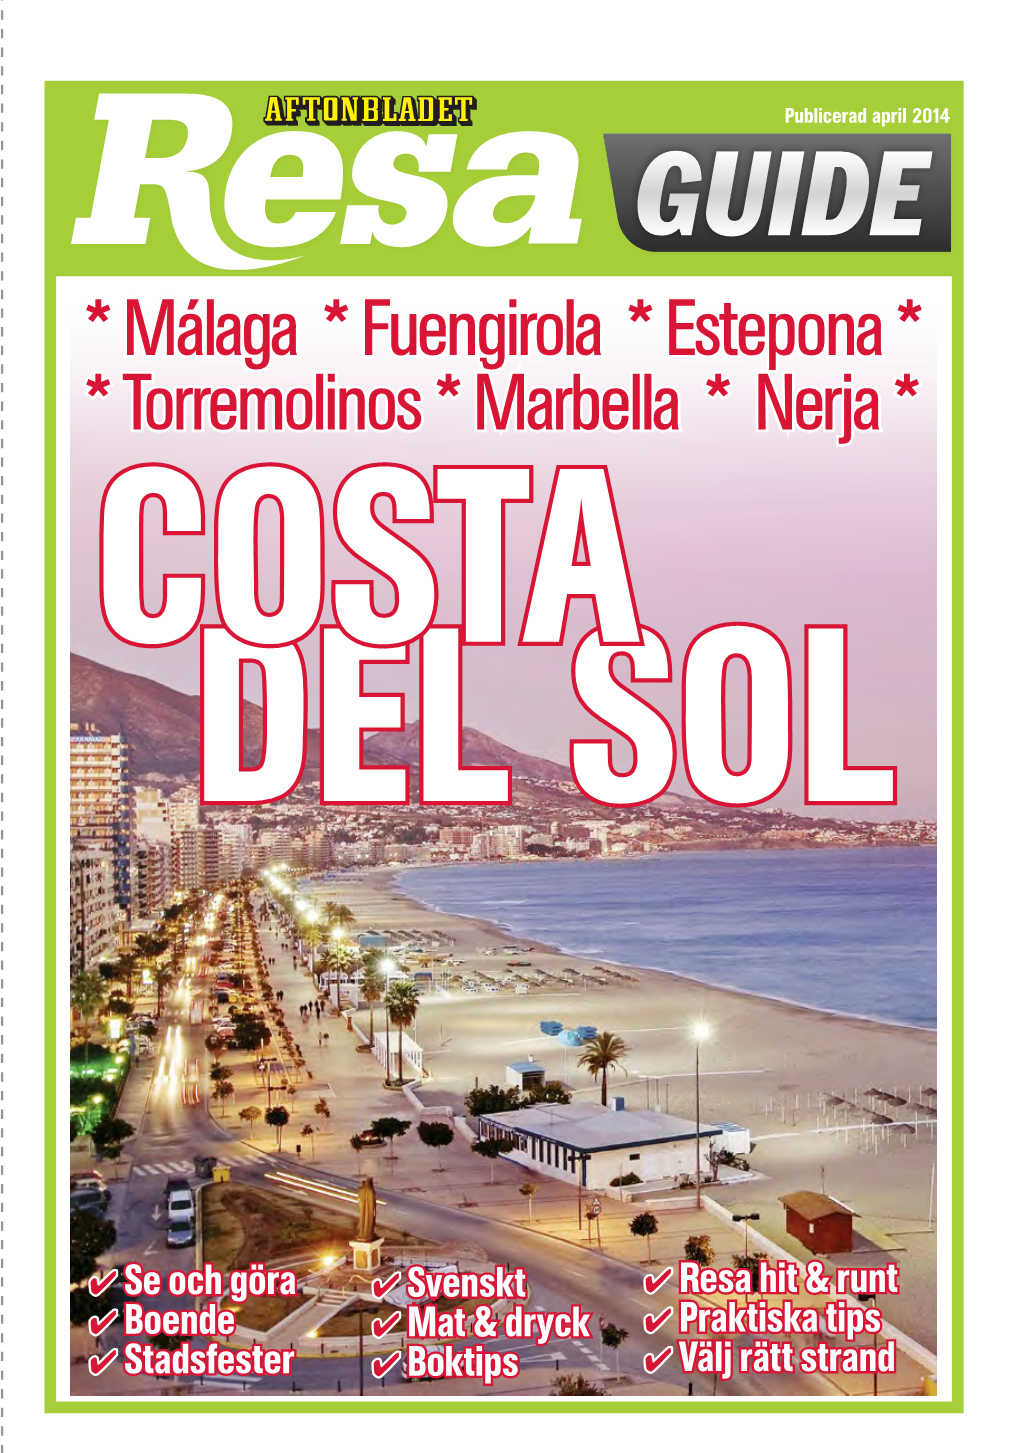 Málaga * Fuengirola * Estepona * * Torremolinos * Marbella * Nerja * COSTA DEL SOL